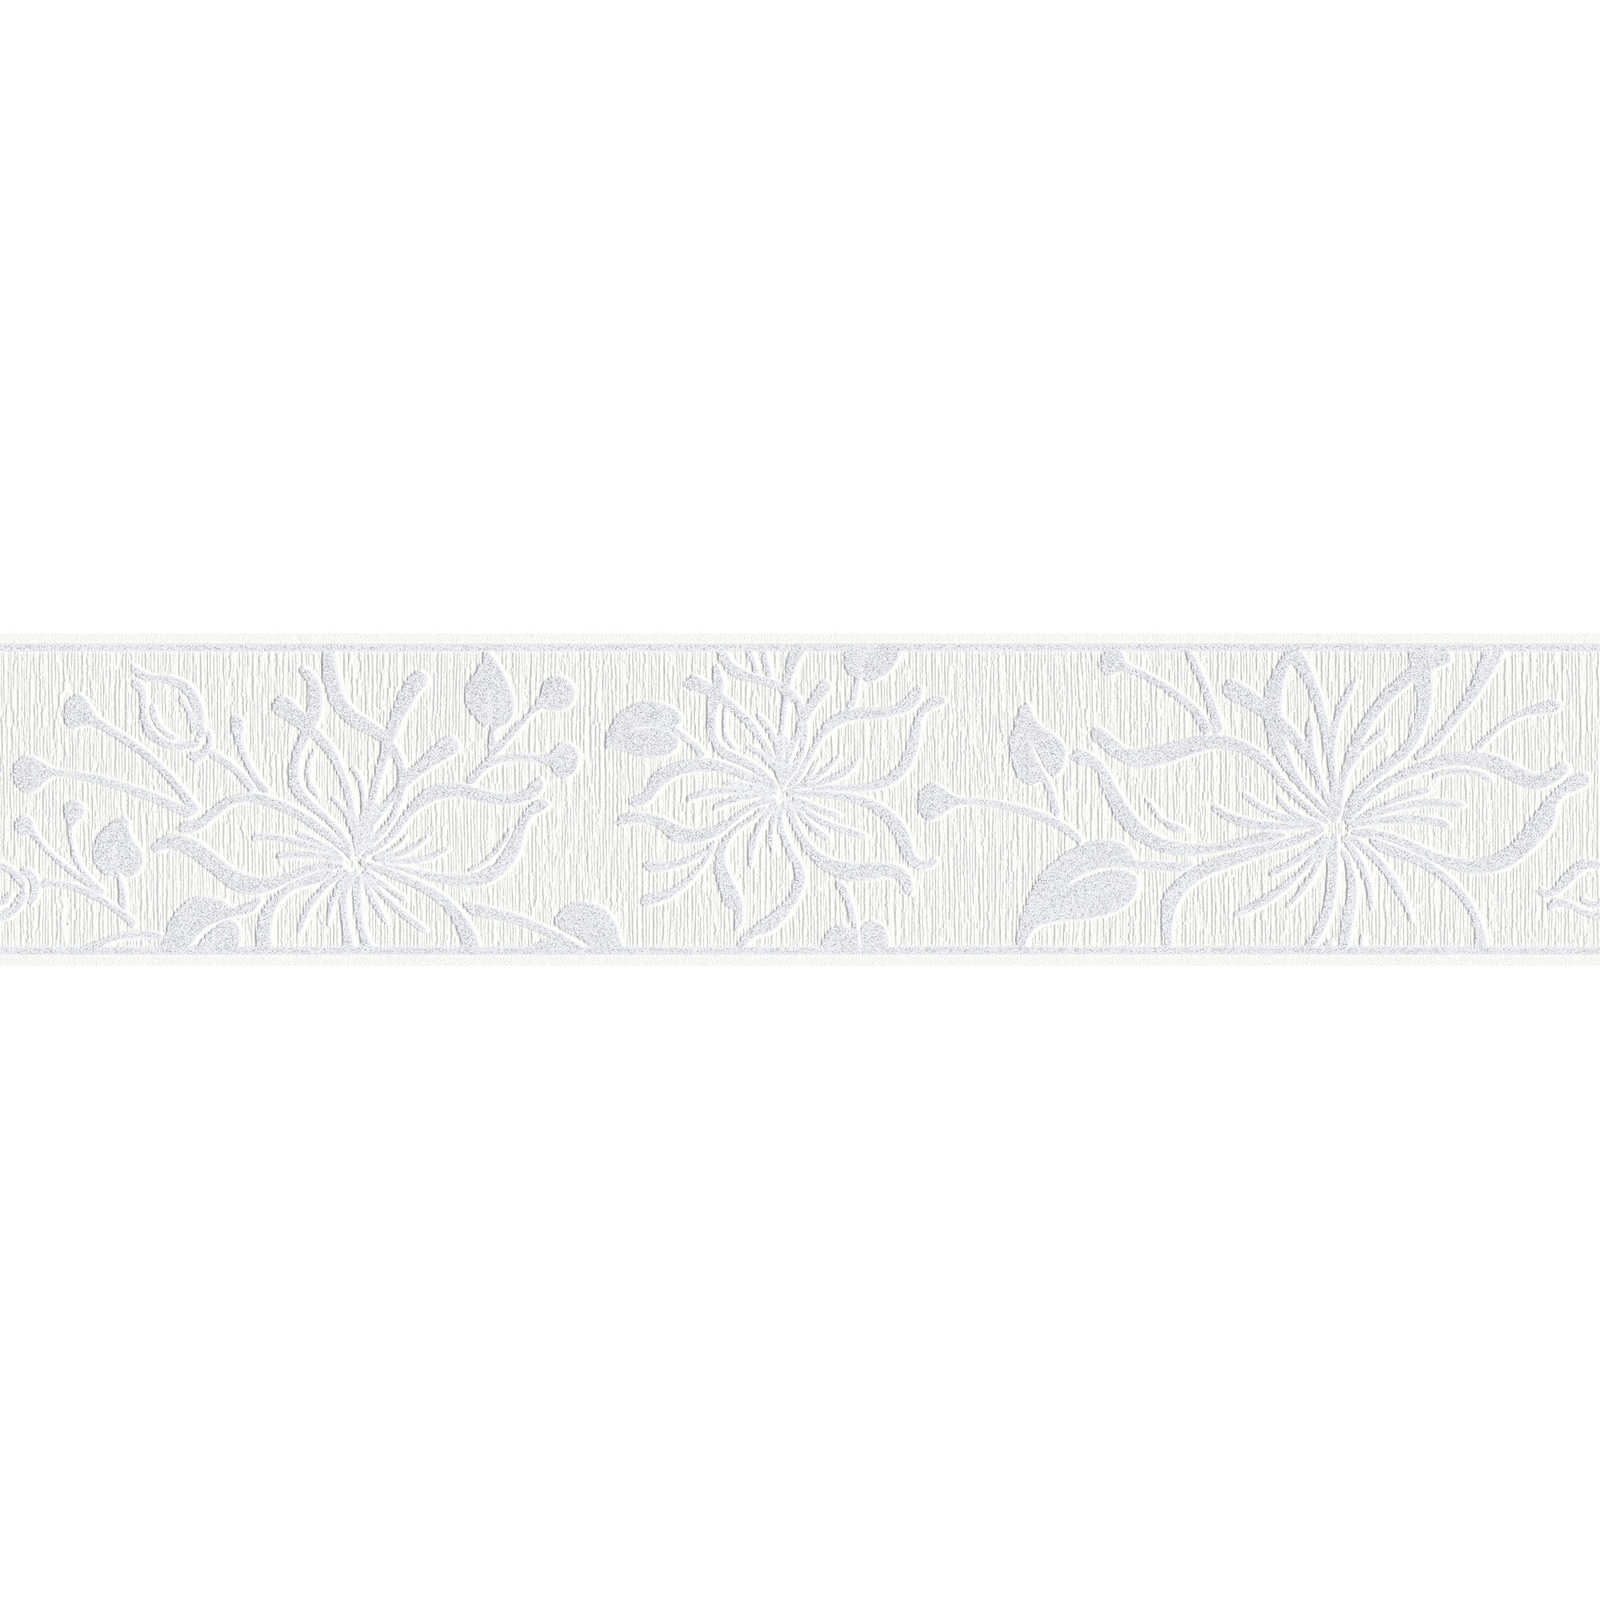 Behangrand wit met bloemenpatroon & structuurontwerp
